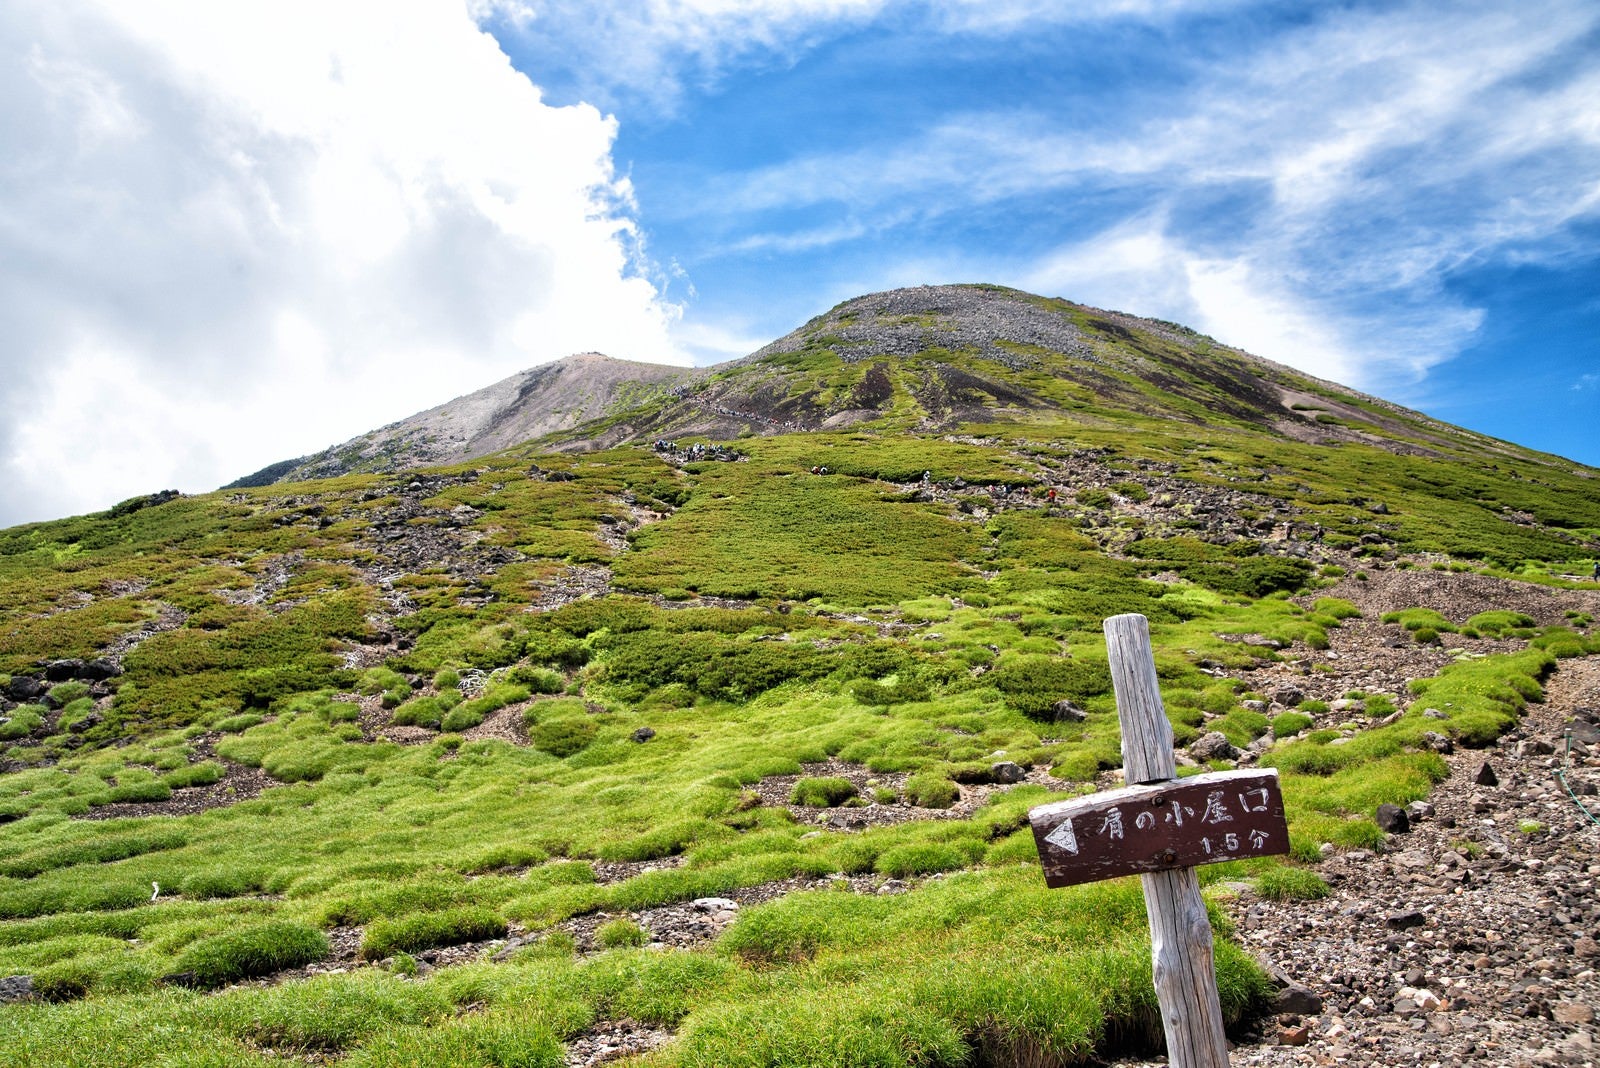 「乗鞍剣ヶ峰の登山道」の写真